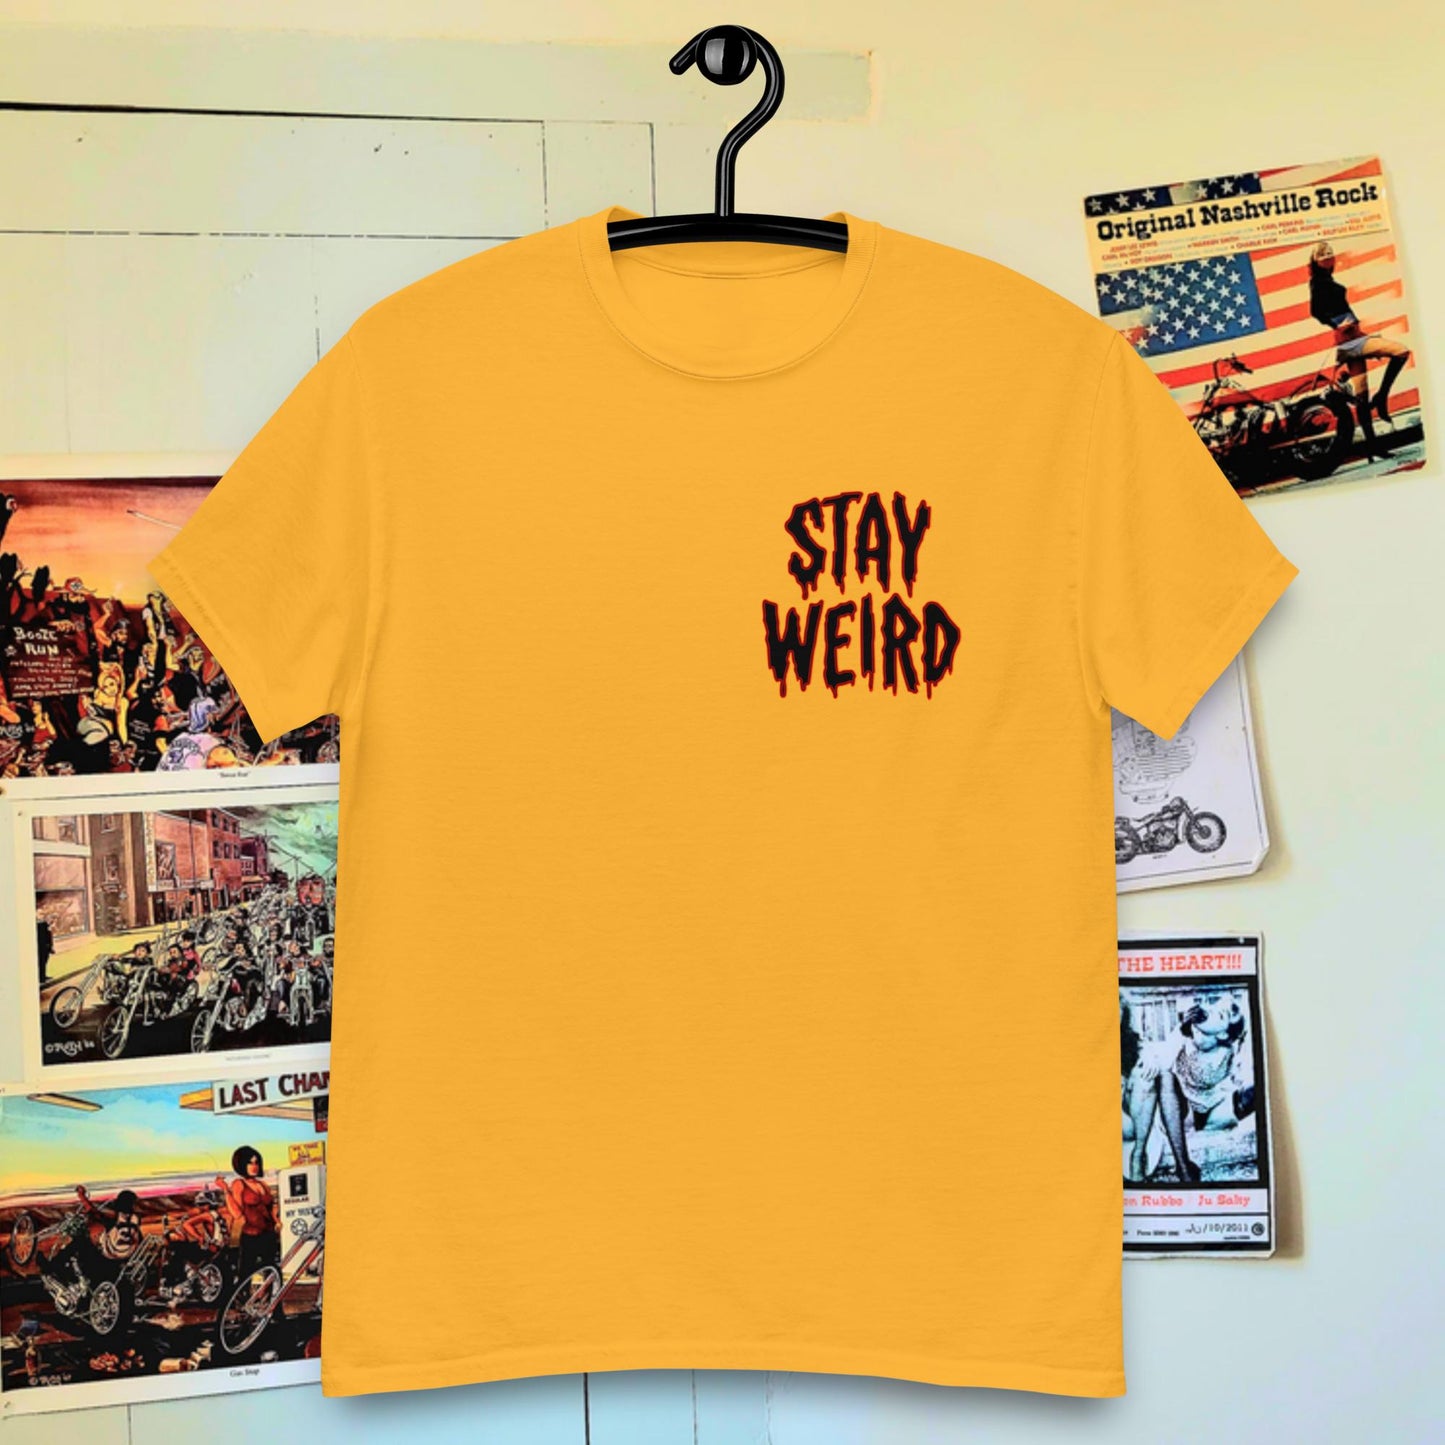 Stay weird!!